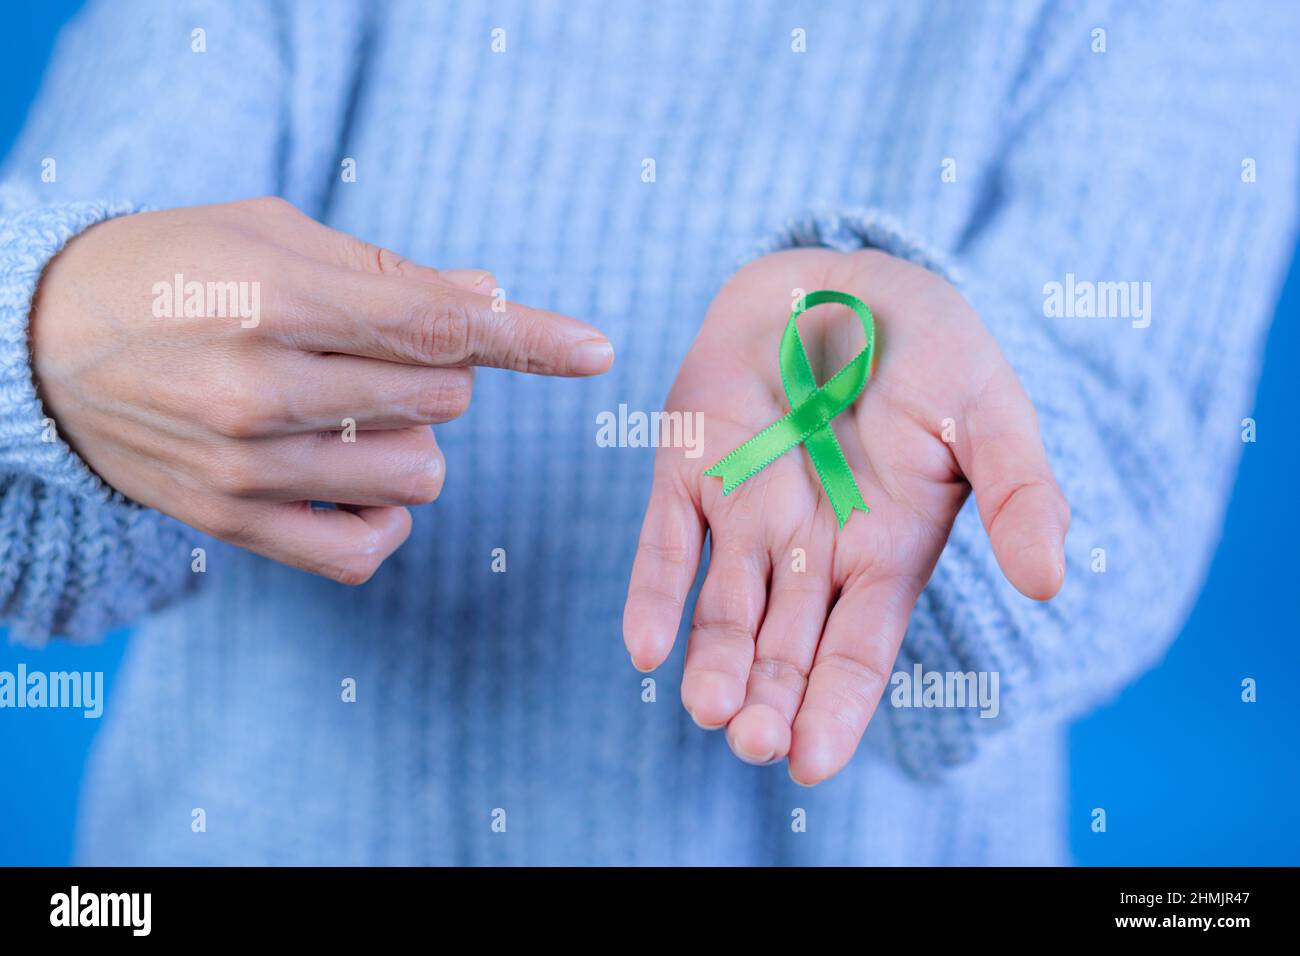 Nastro verde per supportare la consapevolezza del cancro del fegato e surrenale, mani umane che tengono nastro verde. Giornata mondiale del cancro. Spazio per il testo Foto Stock